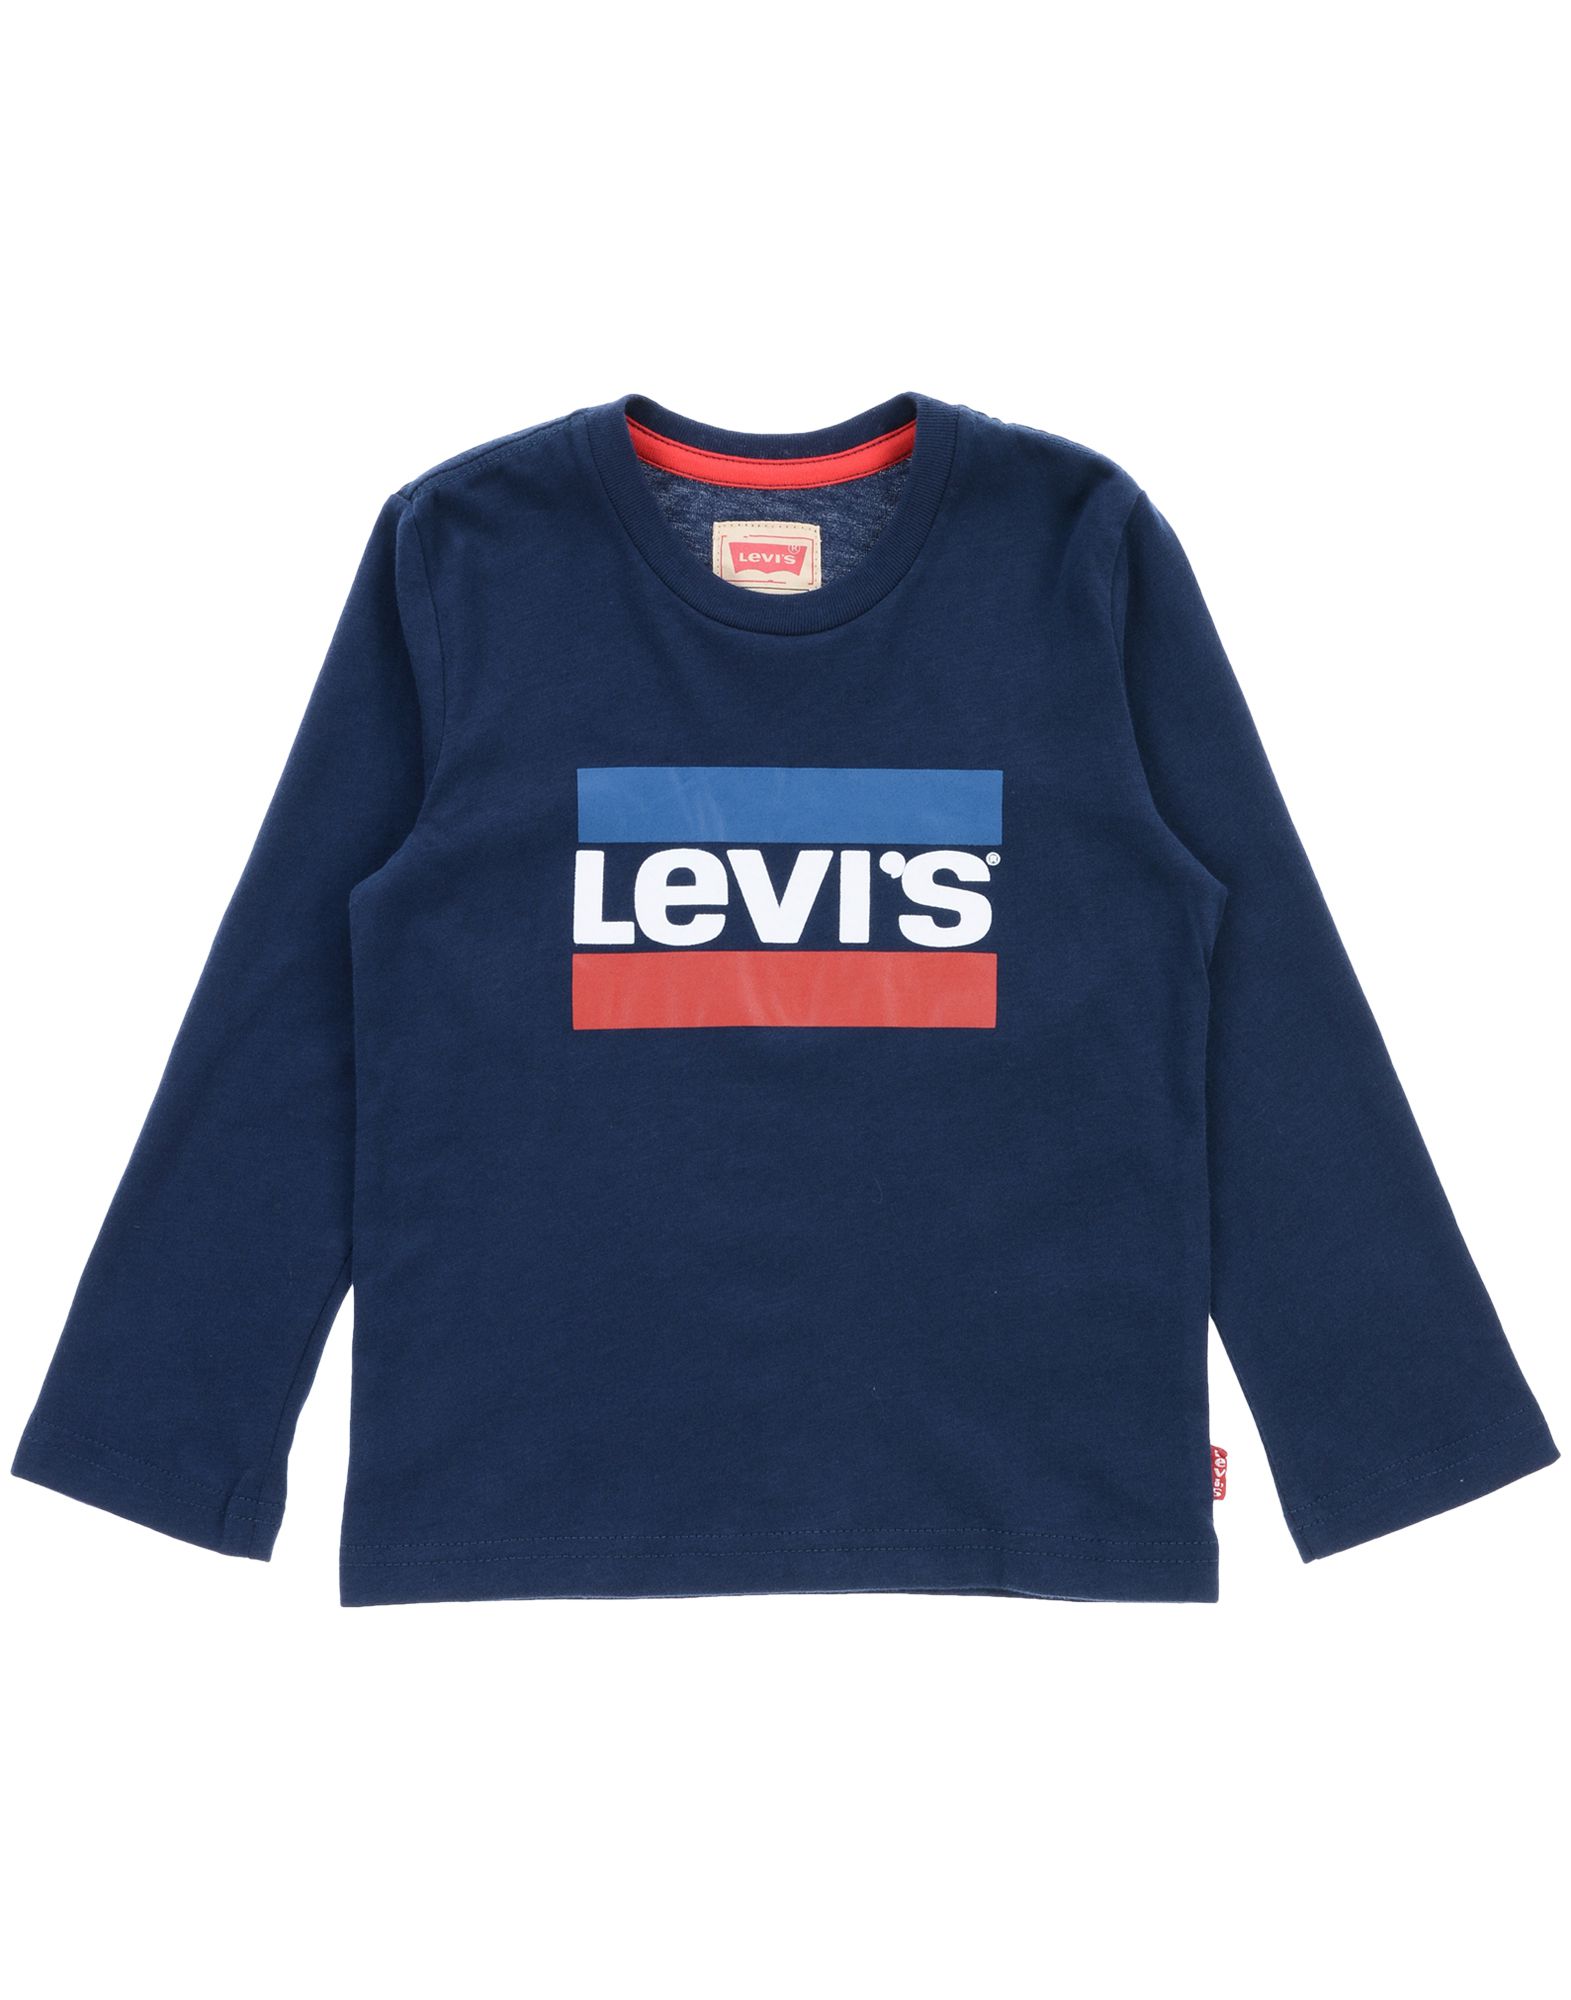 levi's kidswear online cheap online